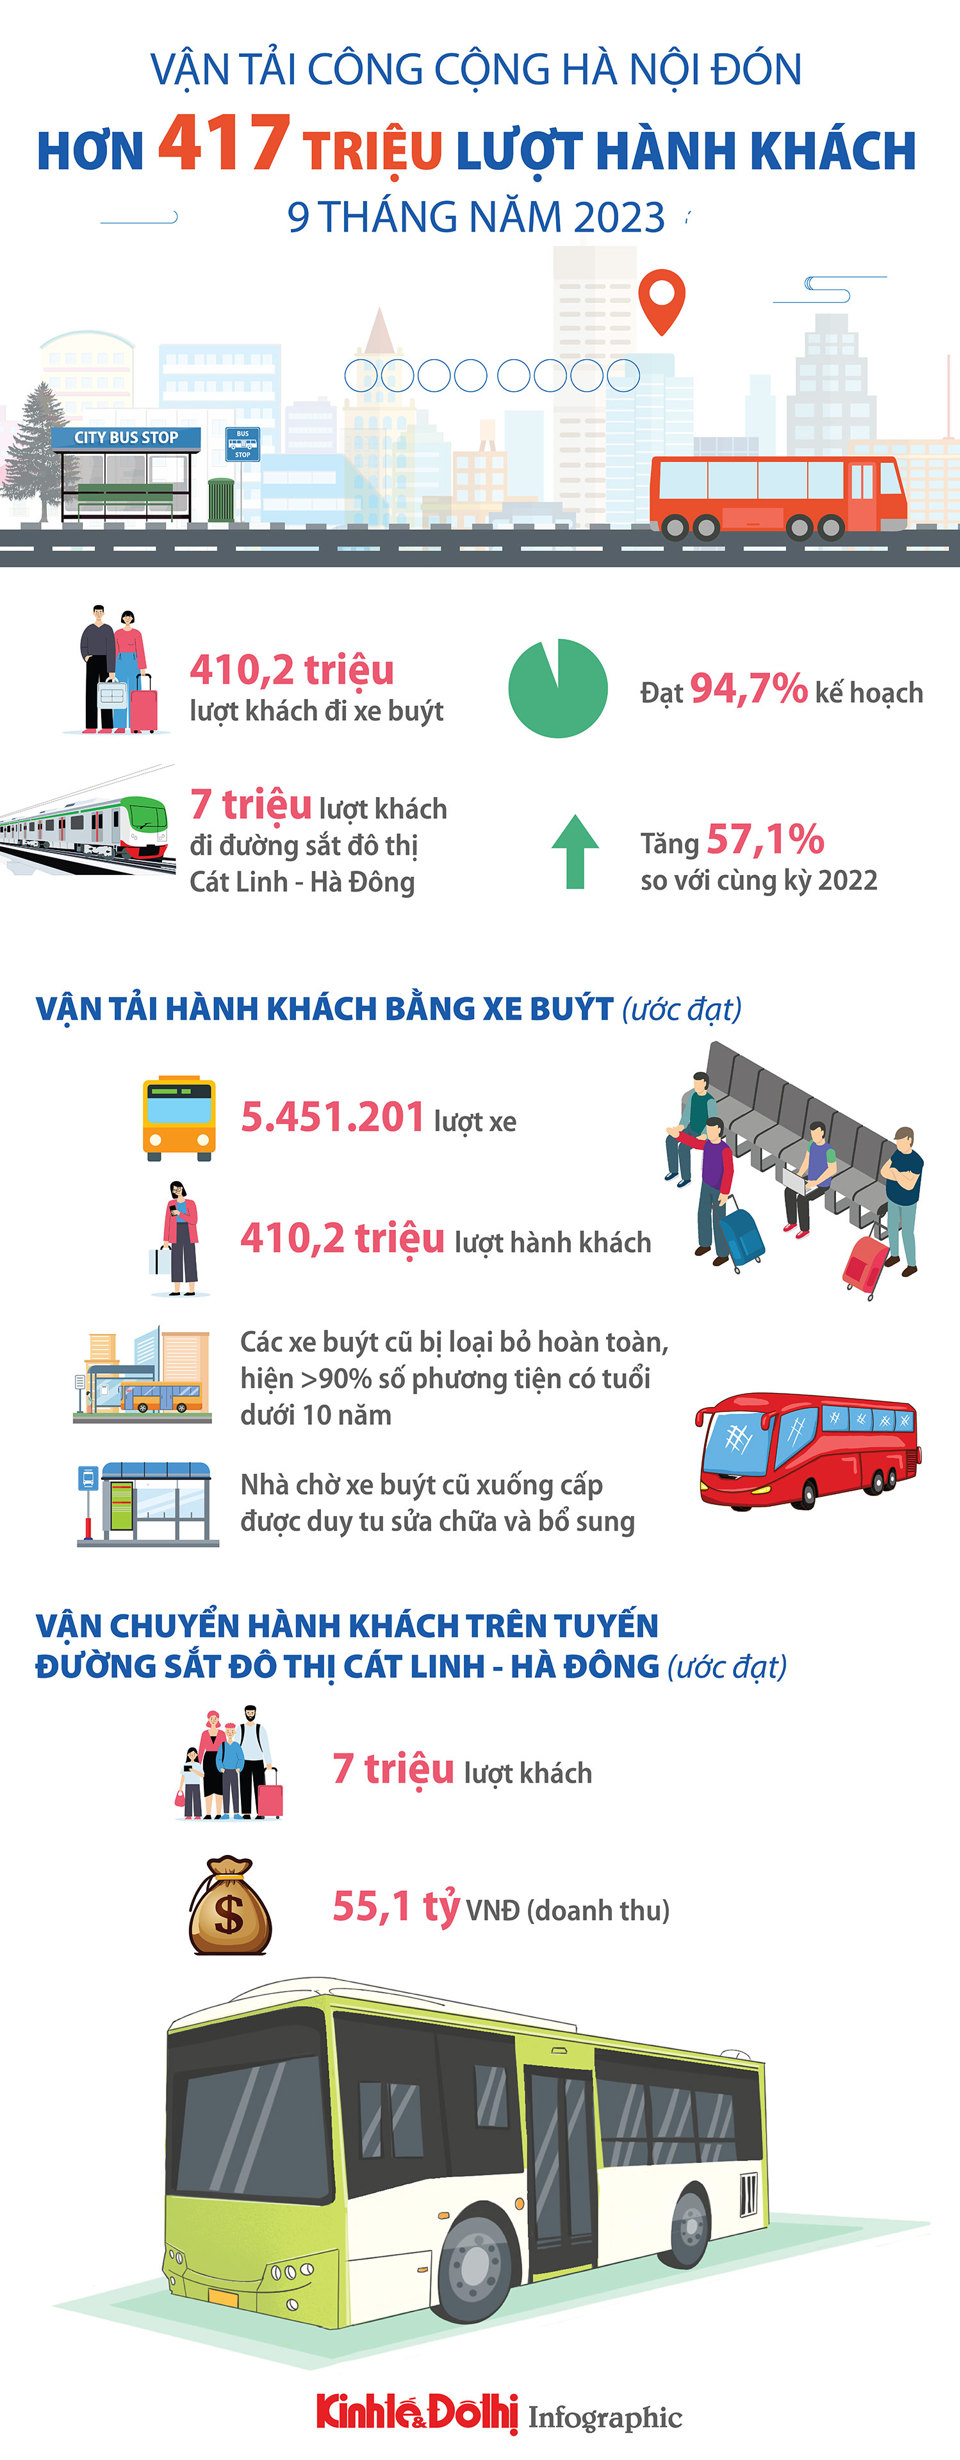 Vận tải công cộng Hà Nội đón hơn 417 triệu lượt hành khách - Ảnh 1